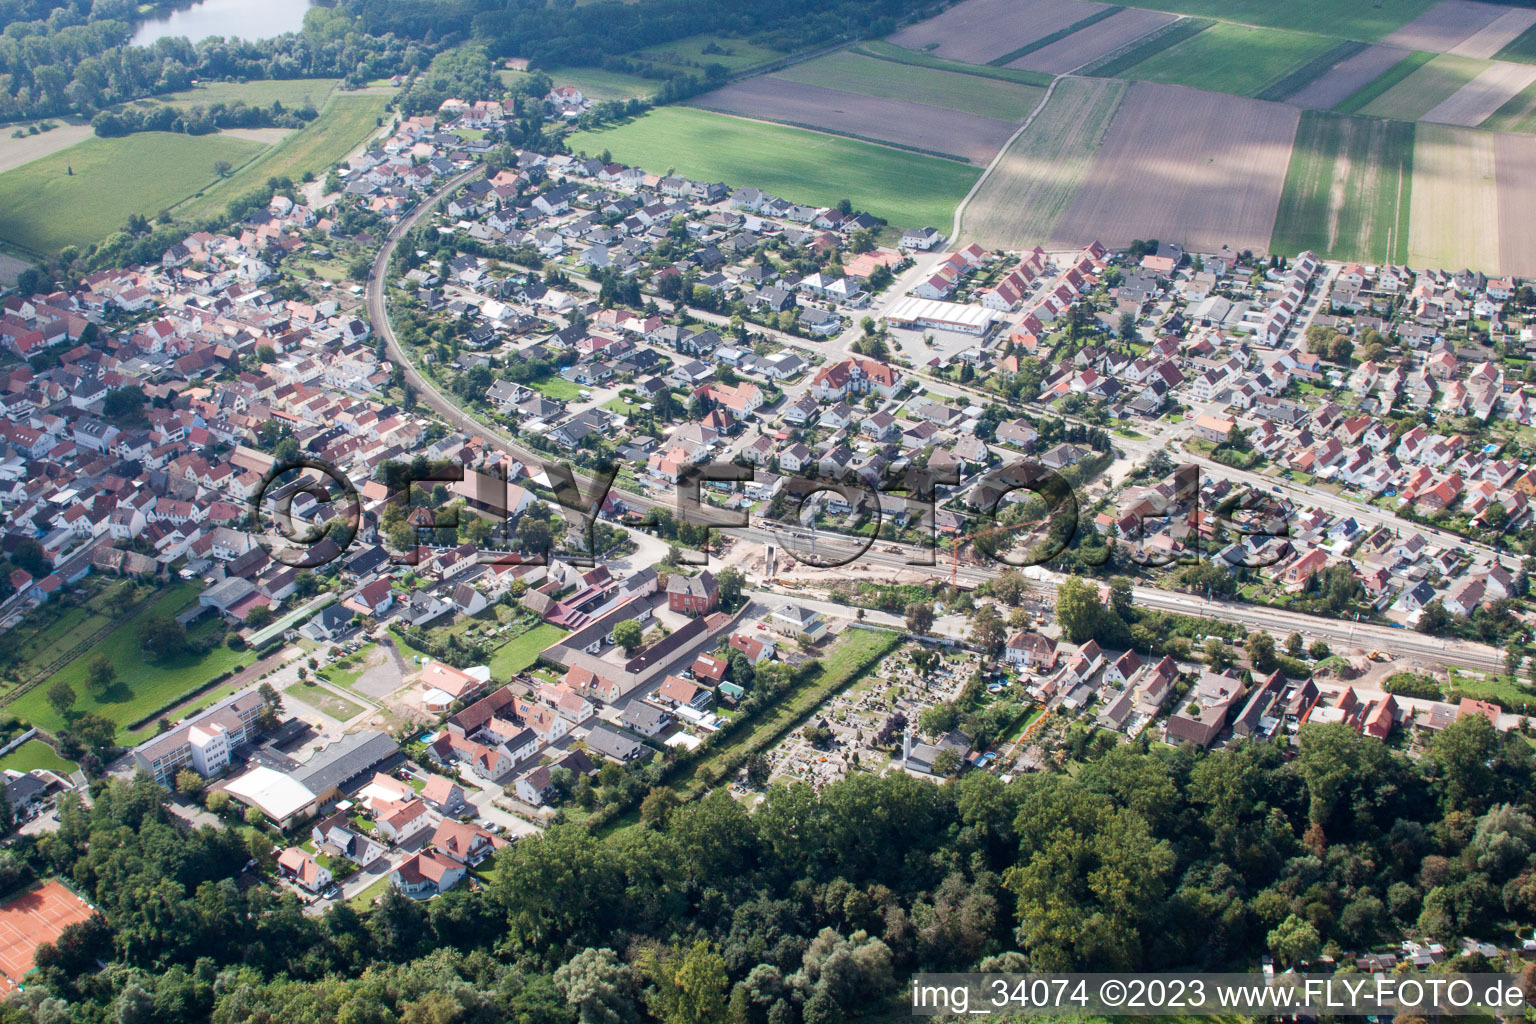 Quartier Sondernheim in Germersheim dans le département Rhénanie-Palatinat, Allemagne depuis l'avion